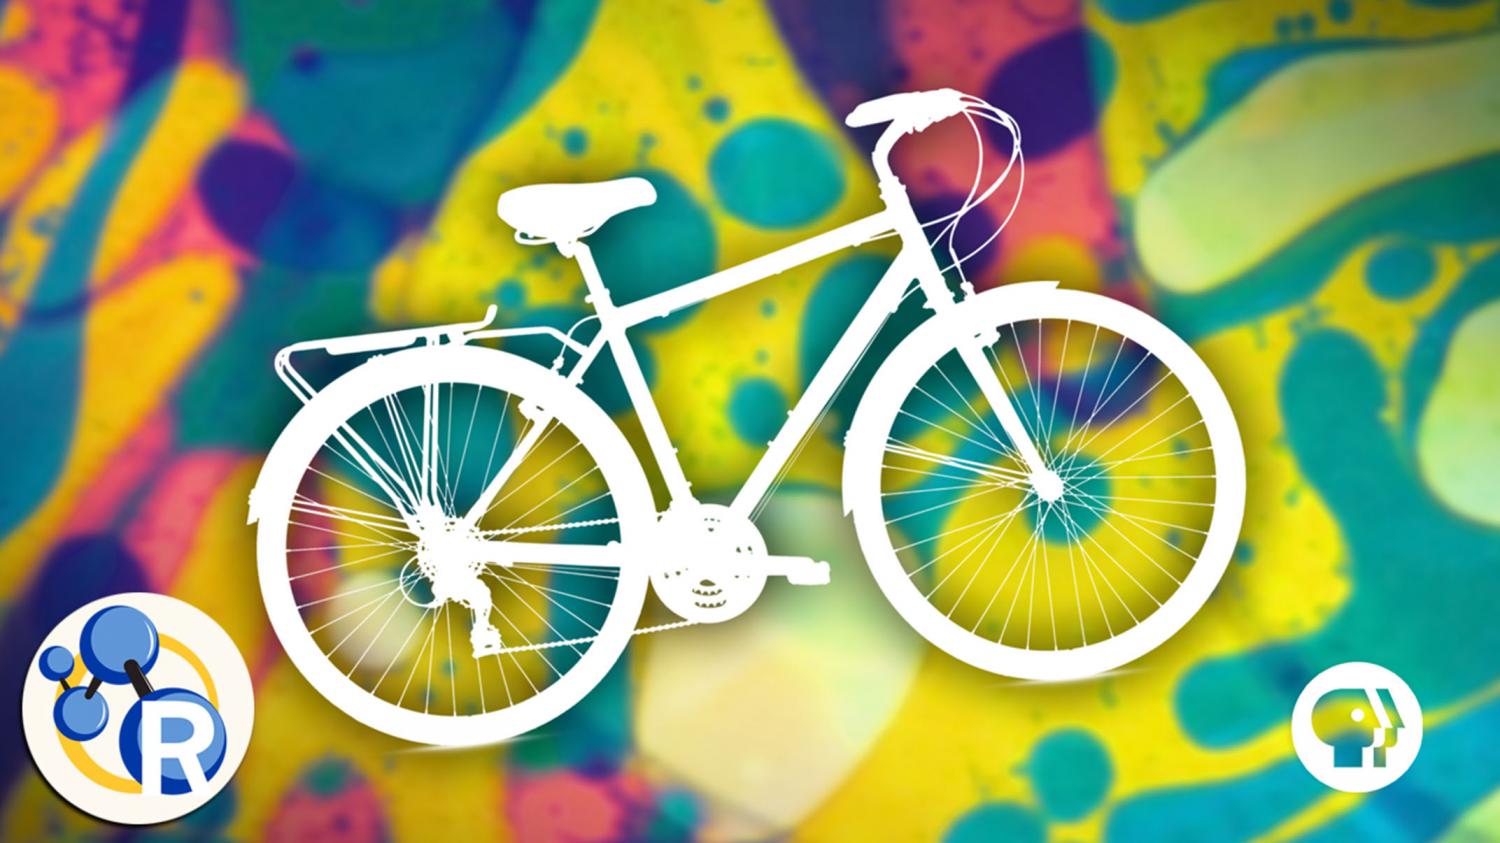 3 июня день людей. Всемирный день велосипеда 3 июня. Всемирный день велосипеда (World Bicycle Day). День велосипеда 19 апреля Хоффман. Праздничный велосипед.